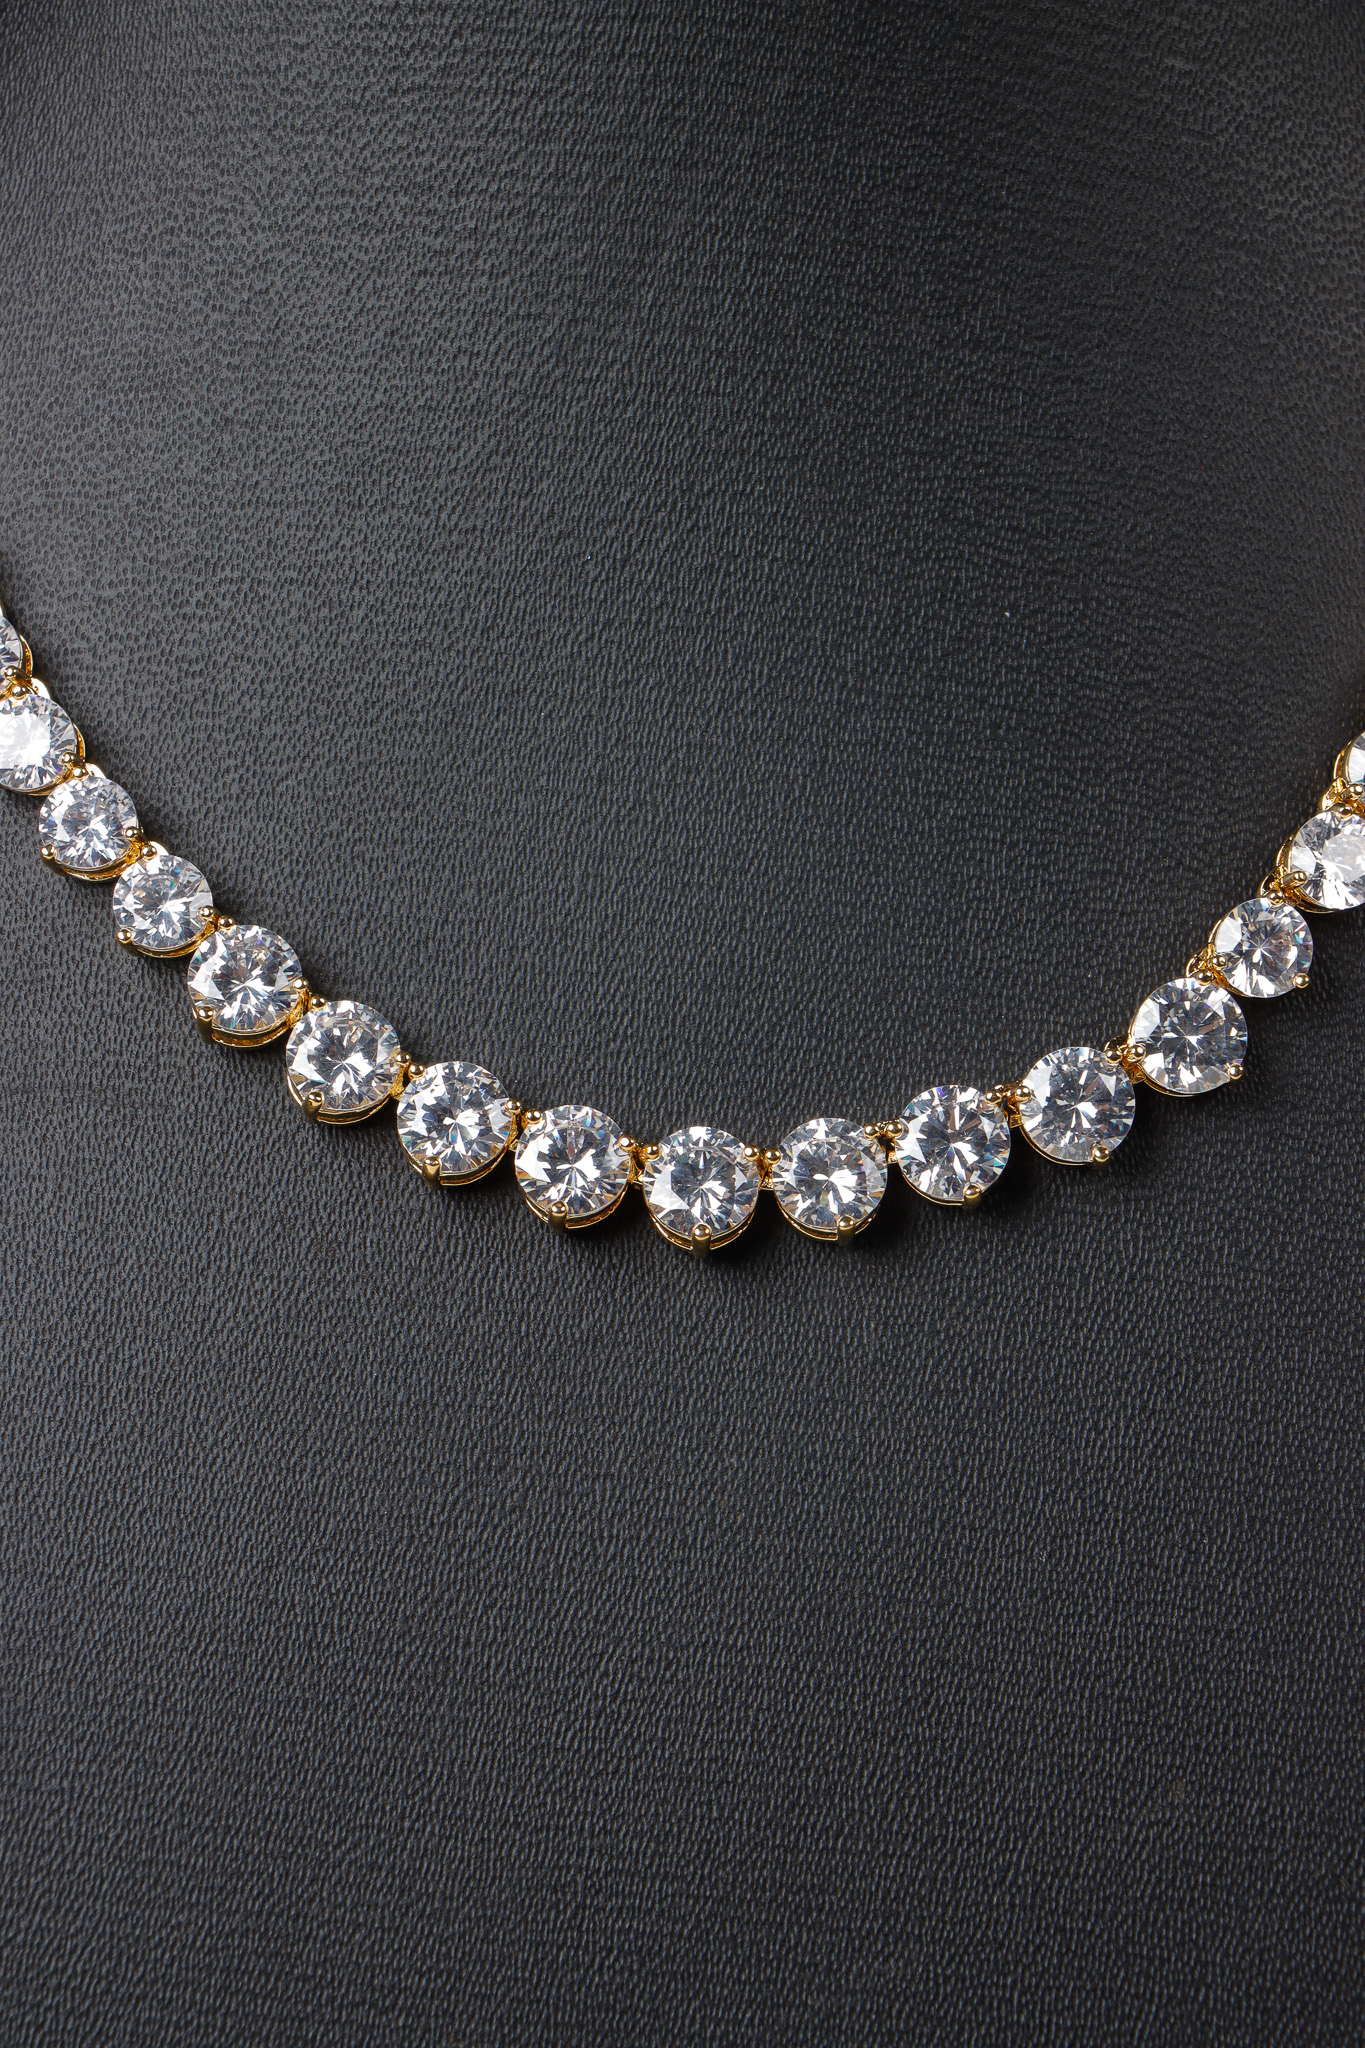 Contemporary Ruby Diamond Necklace Set | Chennai Diamonds